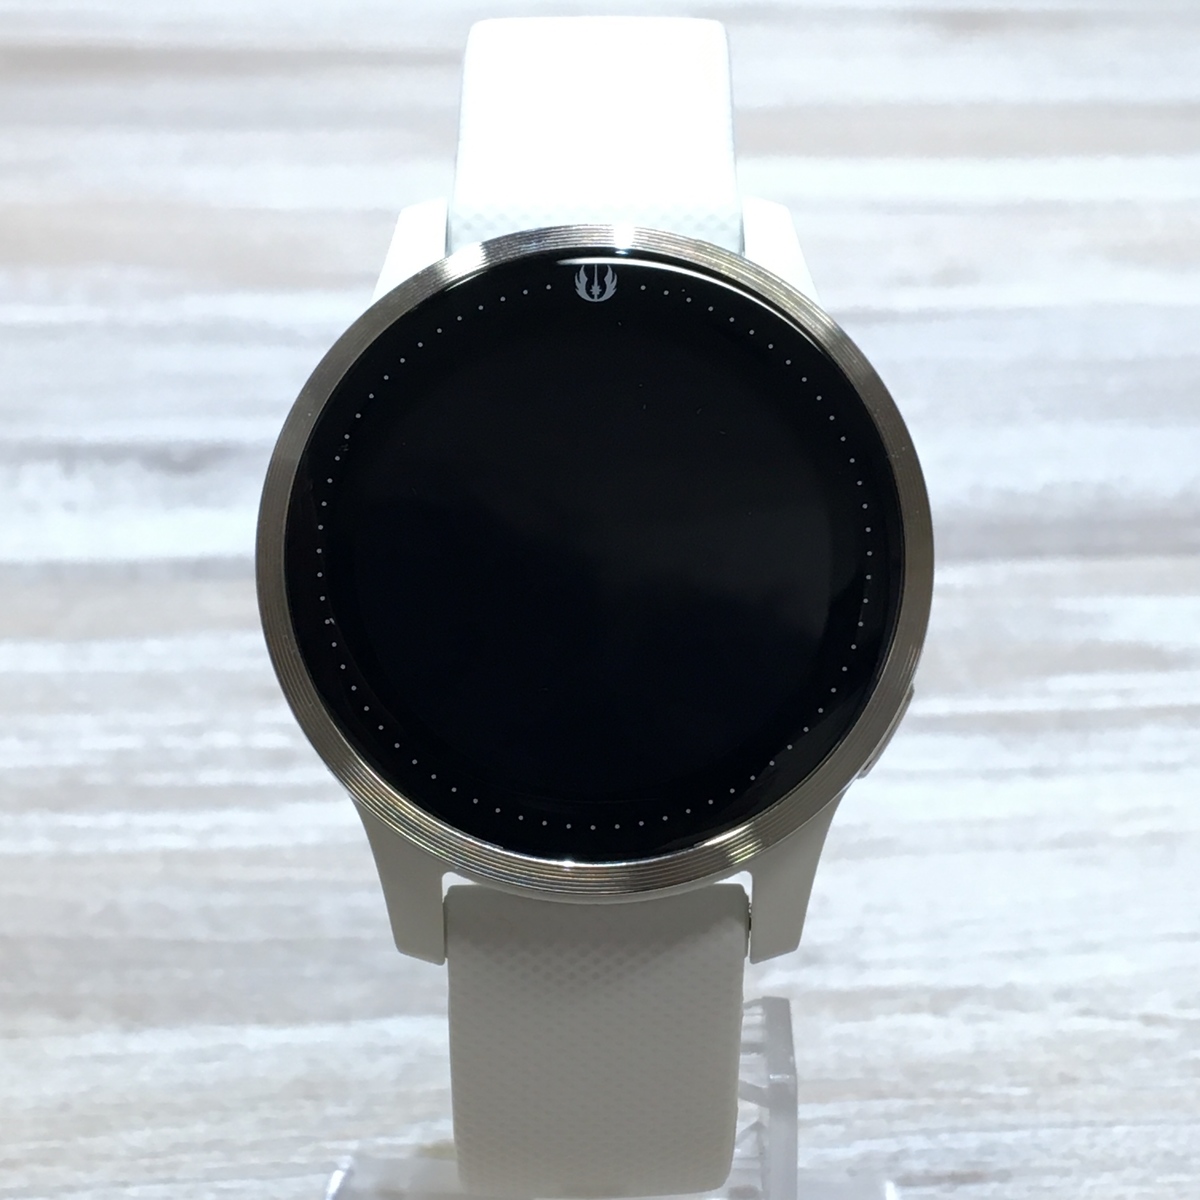 ガーミンの010-02172-57 LEGACY SAGA SERIES REYレイ GPSスマートウォッチ腕時計の買取実績です。